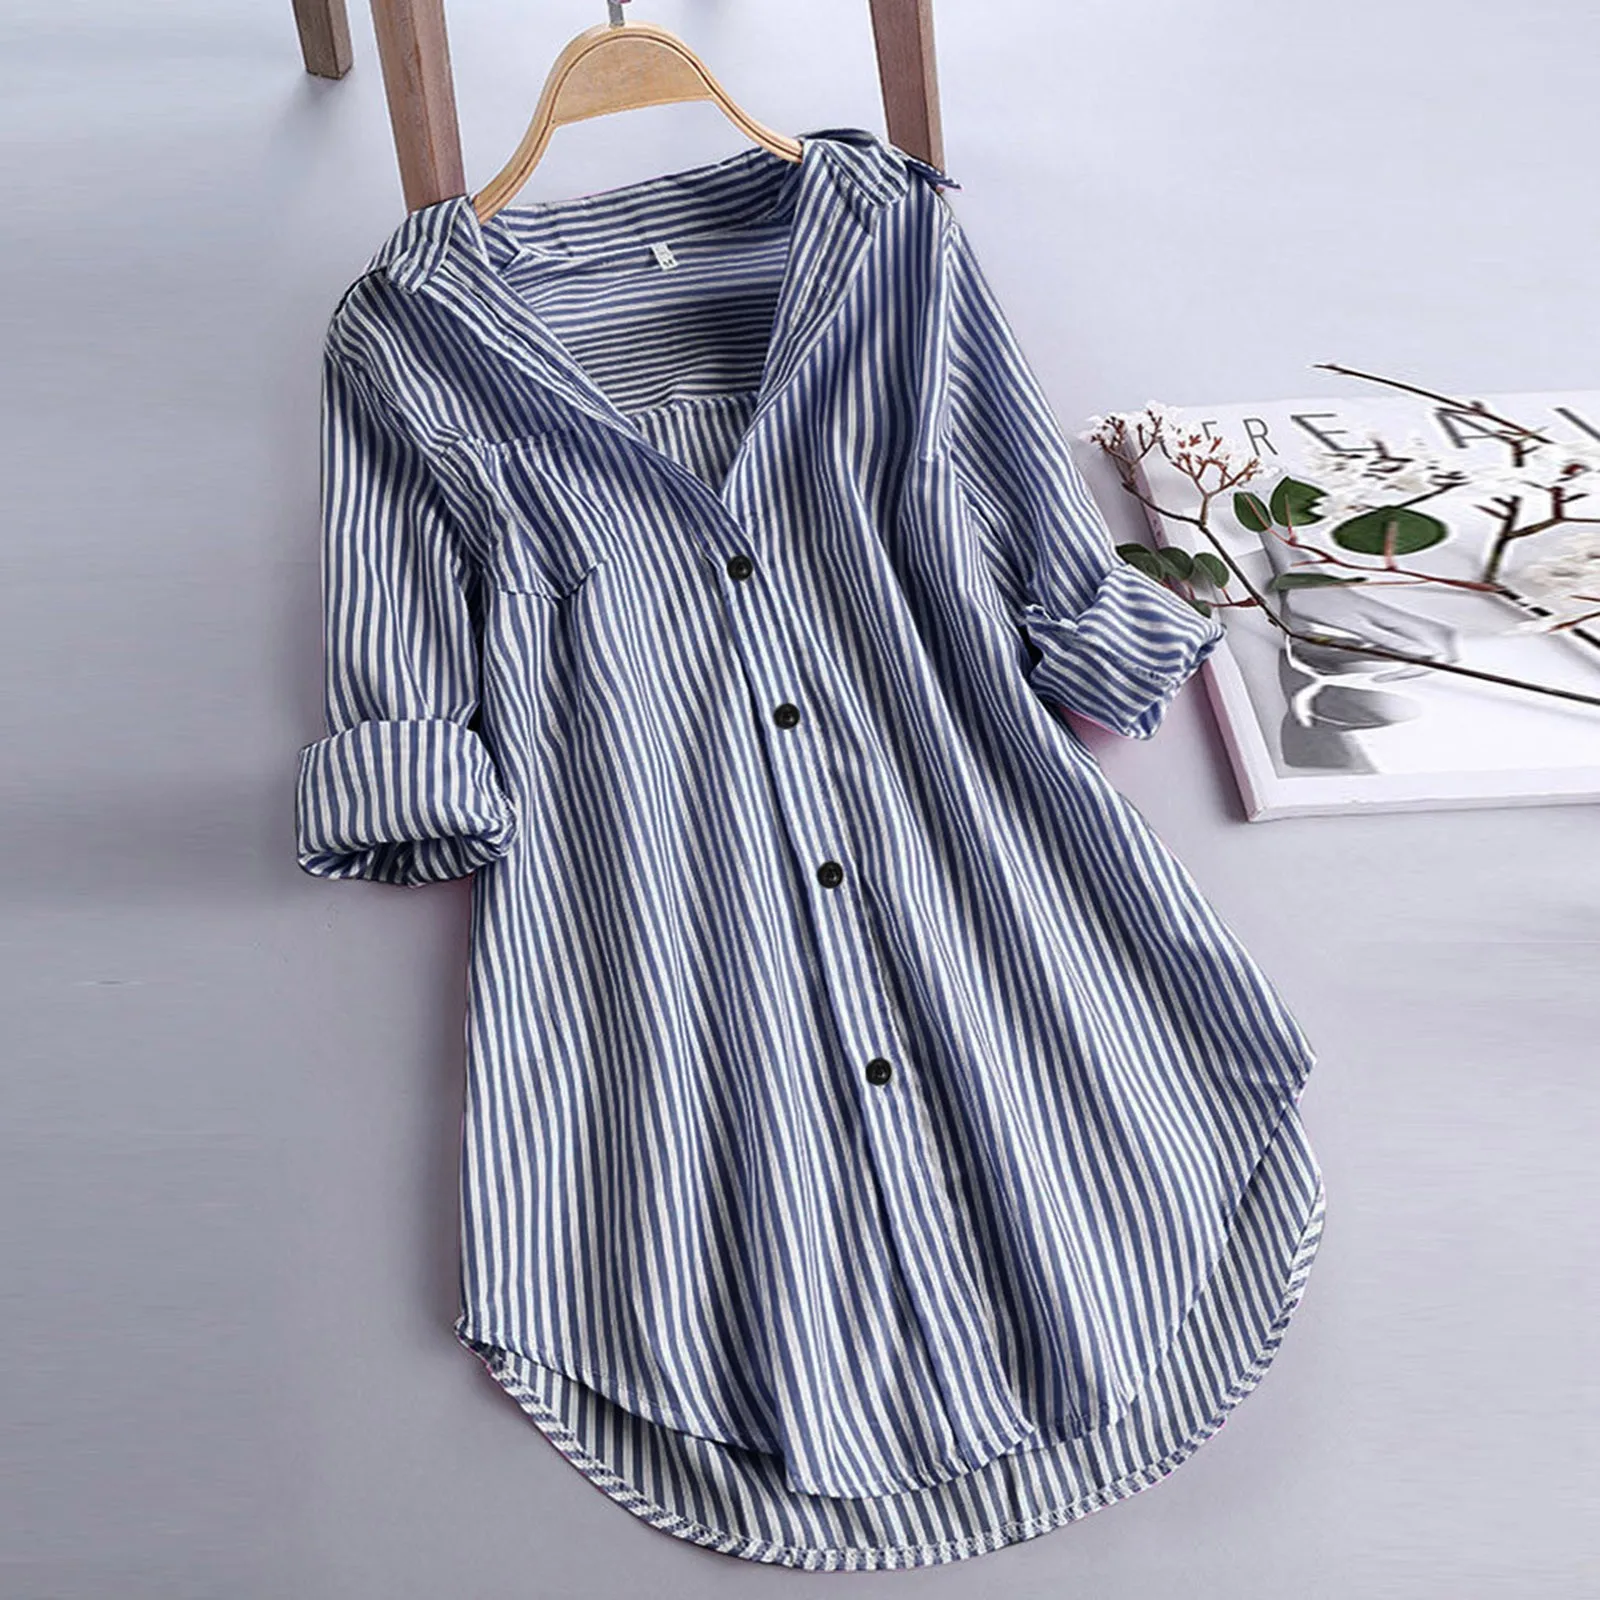 

Striped Print Long Shirt Women Tunic Oversized Shirts Tunic For Women Casual Long Sleeve Turn-down Collar Button Top Shirts